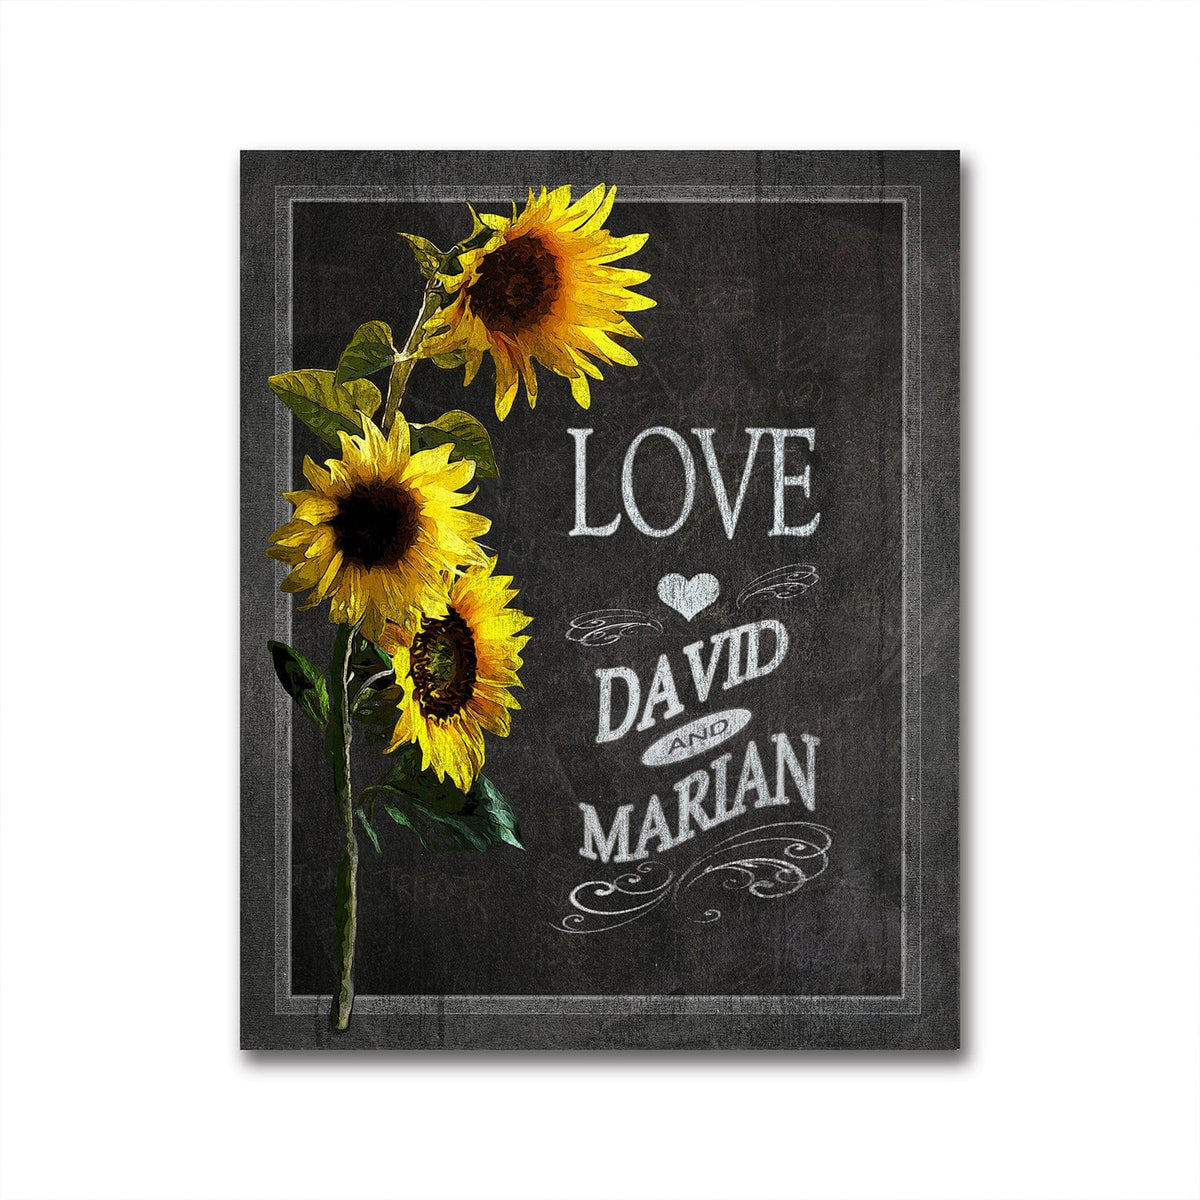 Romantic personalized gift - Chalkboard art - Sun Flowers